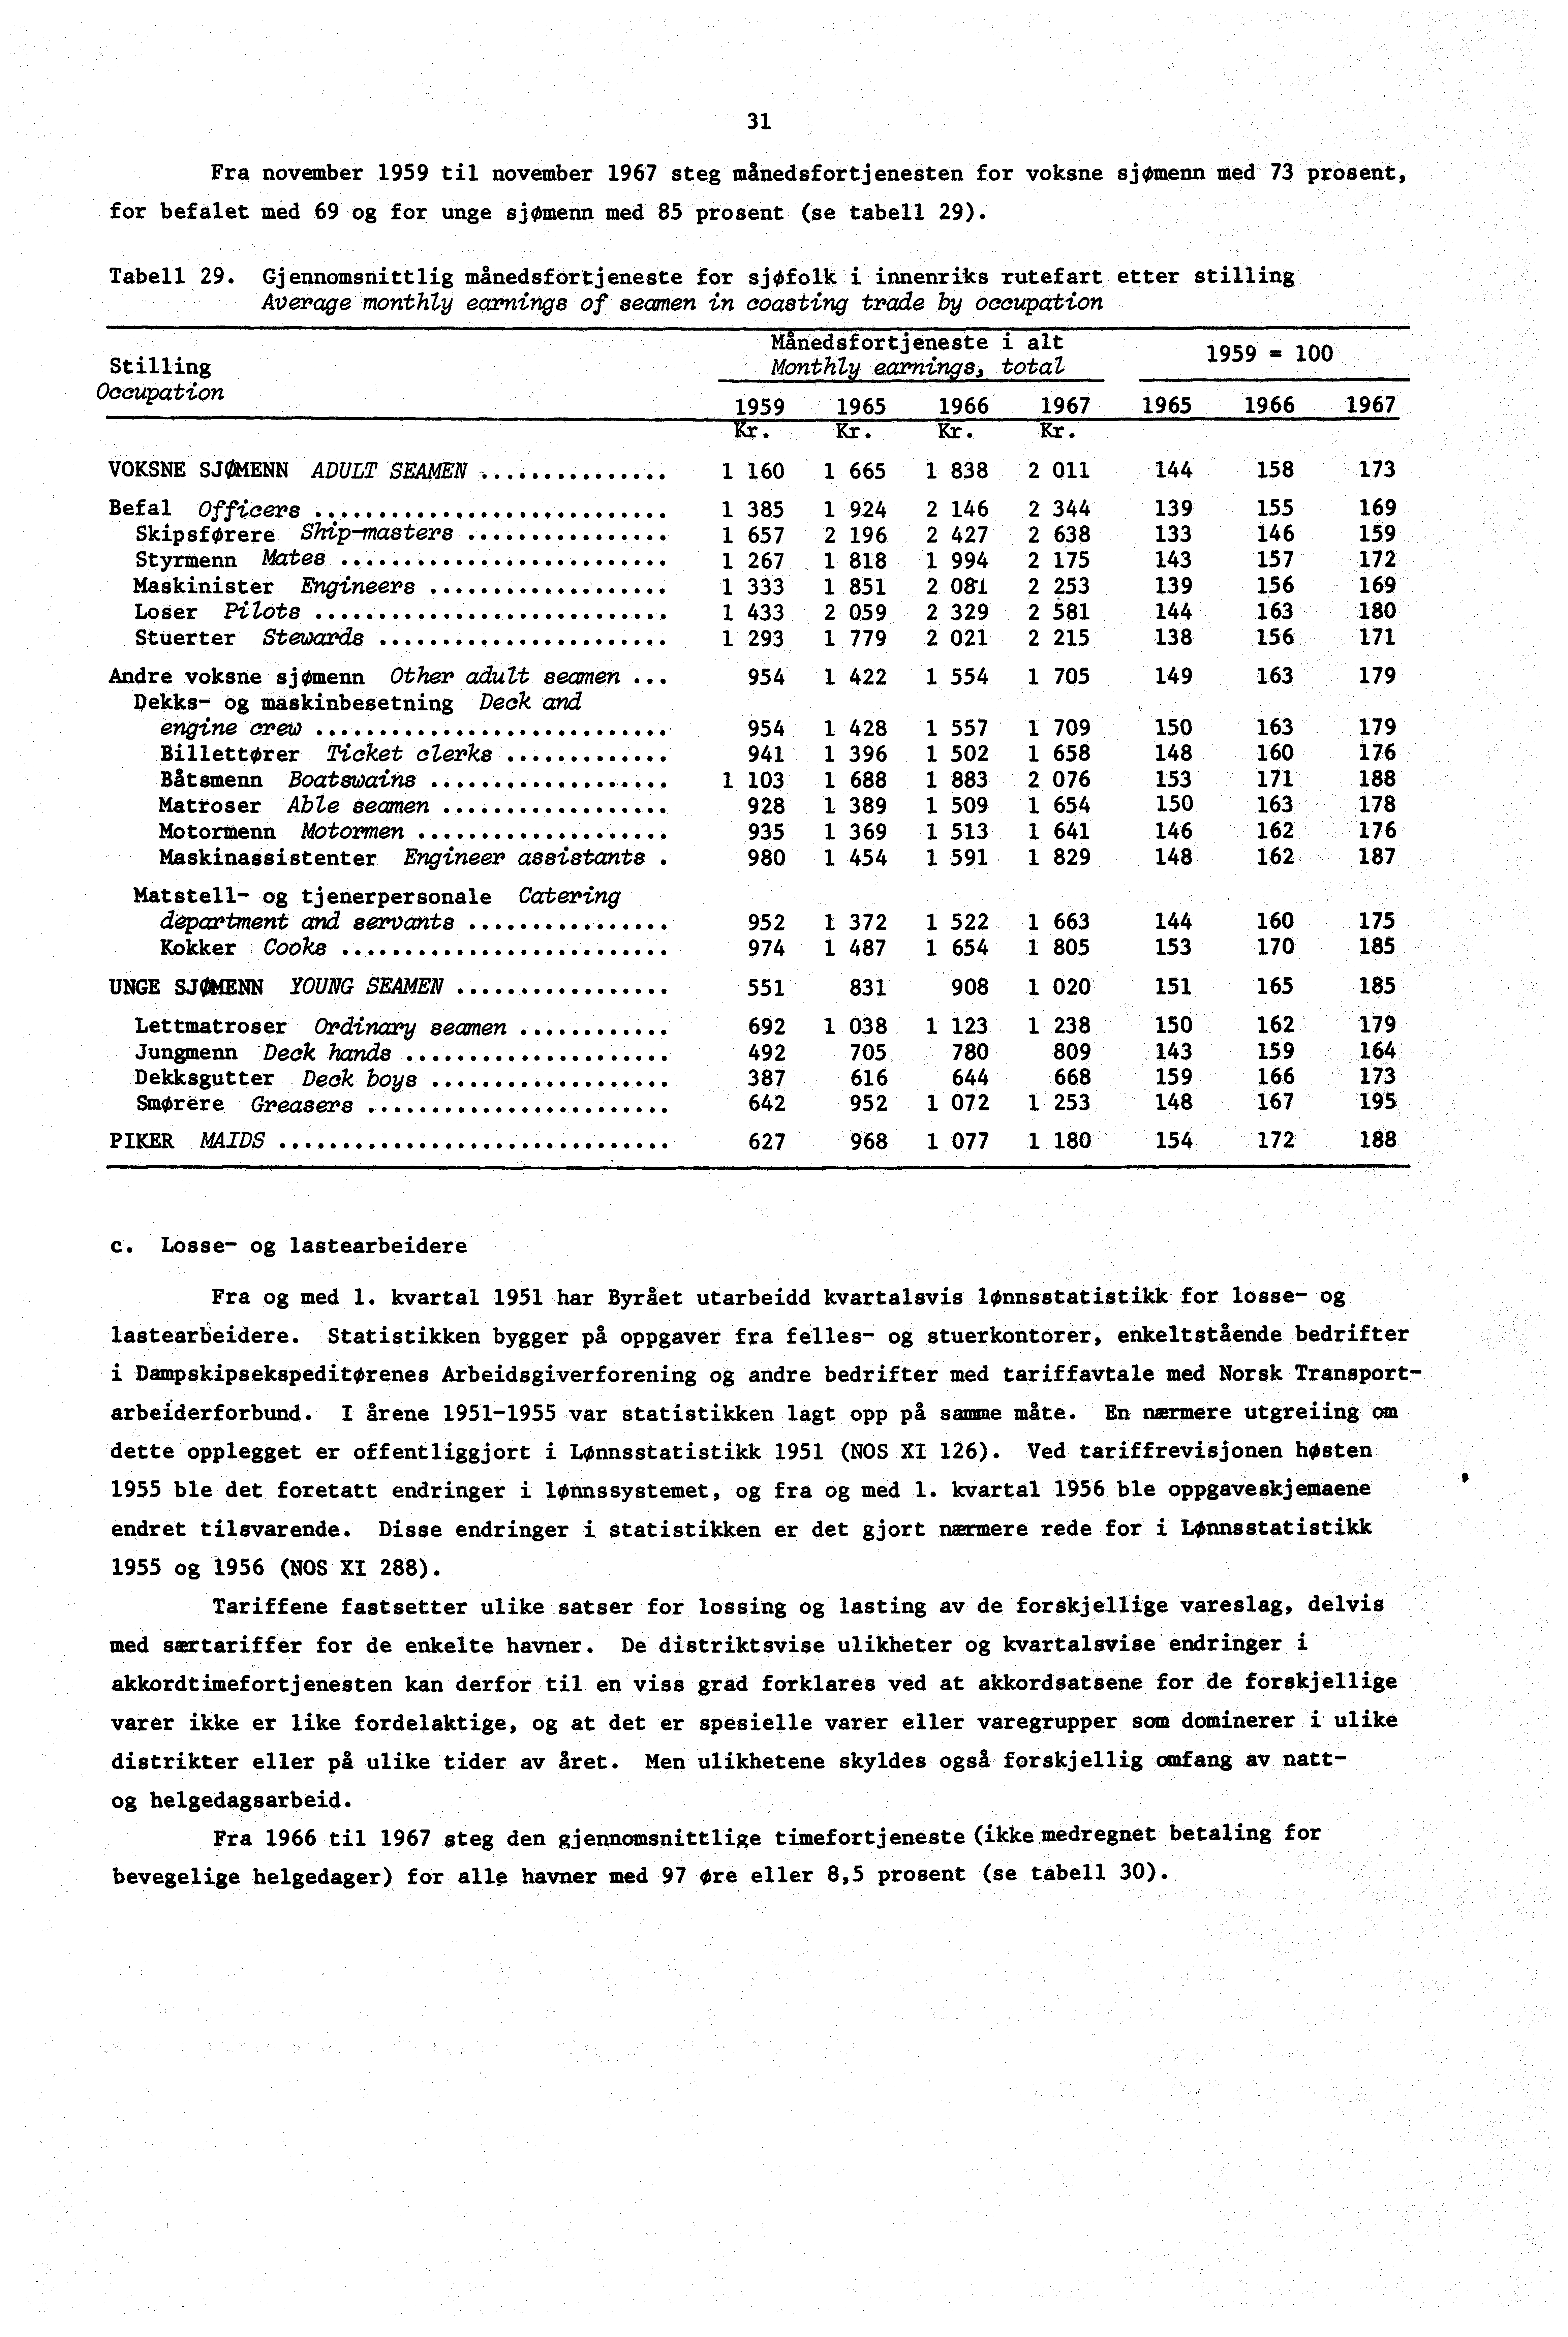 Fra november 1959 til november 1967 steg månedsfortjenesten for voksne sjgbmenn med 73 prosent, for befalet med 69 og for unge sjømenn med 85 prosent (se tabell 29). Tabell 29.